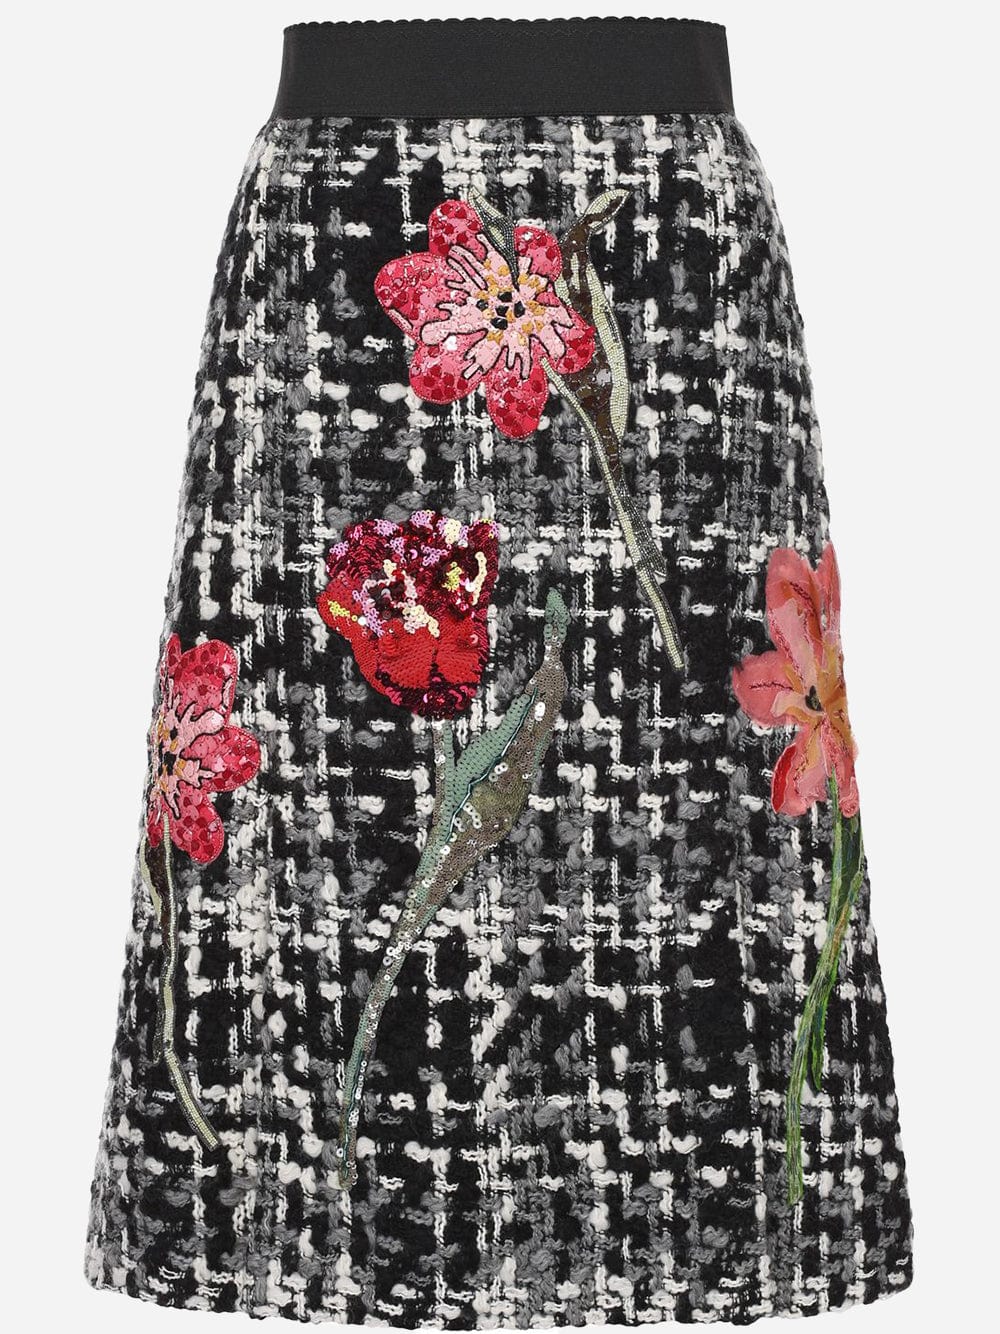 Dolce & Gabbana Flower Bouclé Knit Skirt